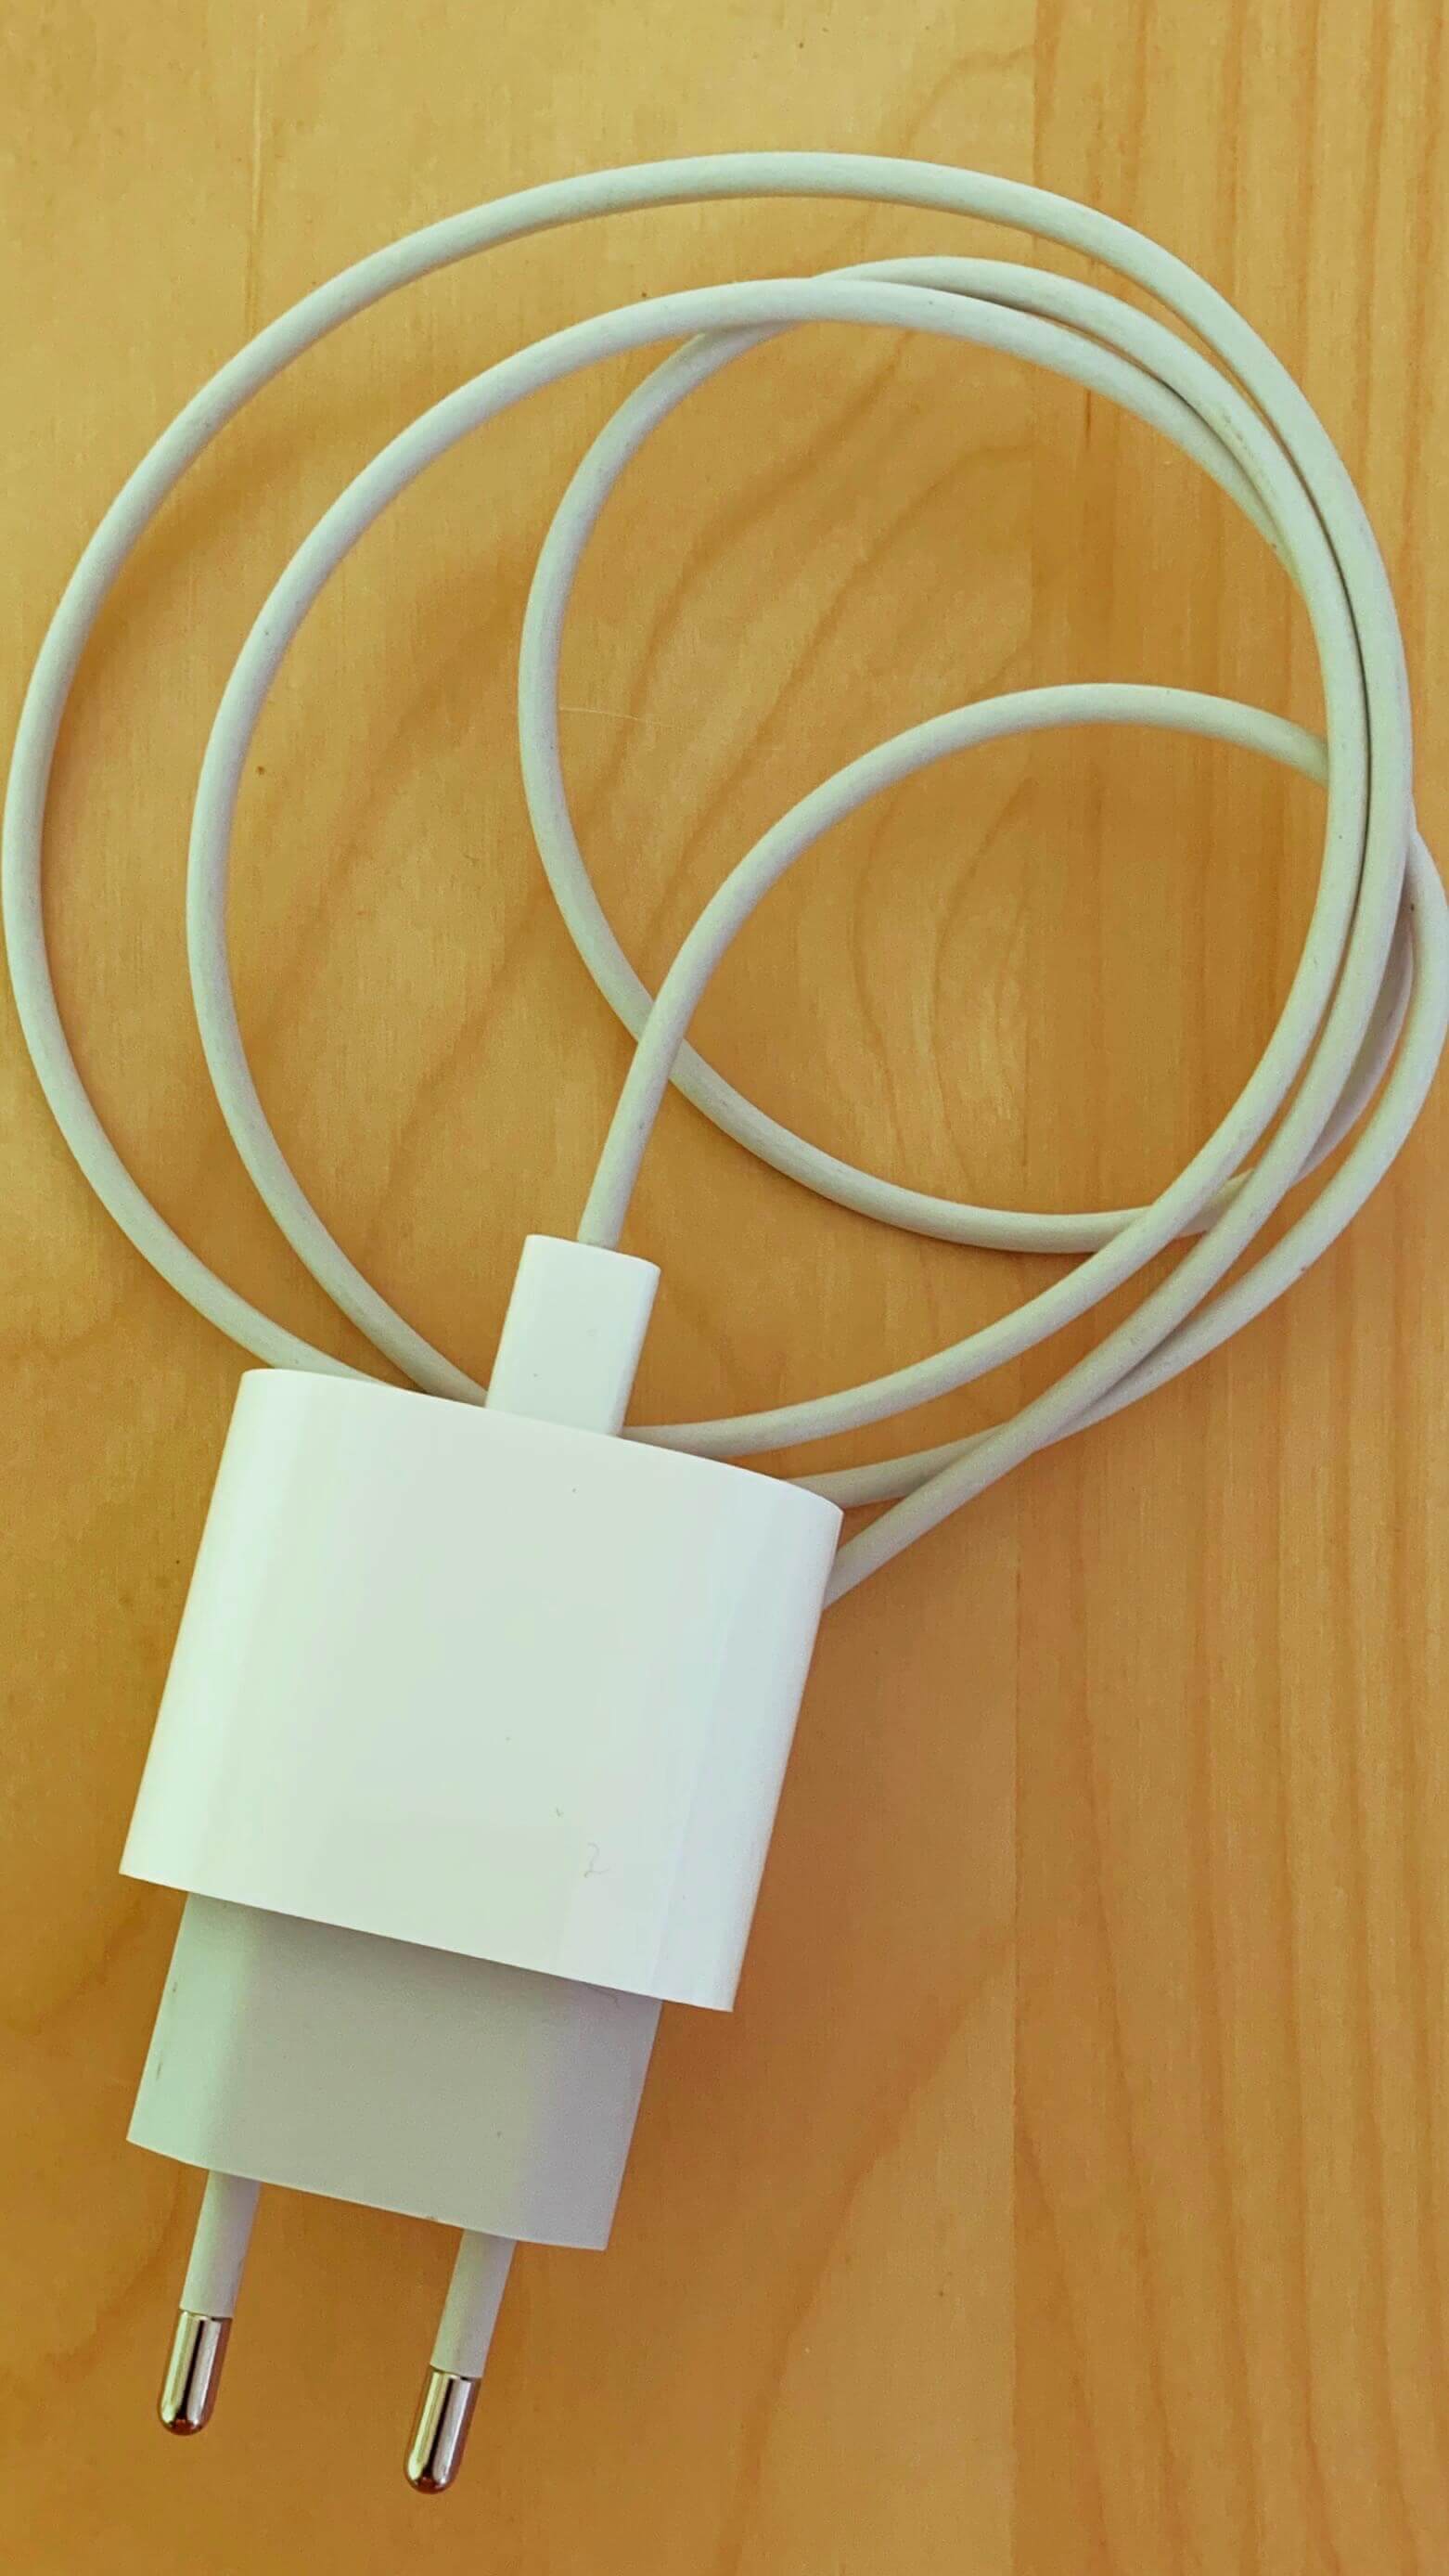 De 18W USB-C lader van Apple is relatief goedkoop, en kan een iPhone supersnel opladen